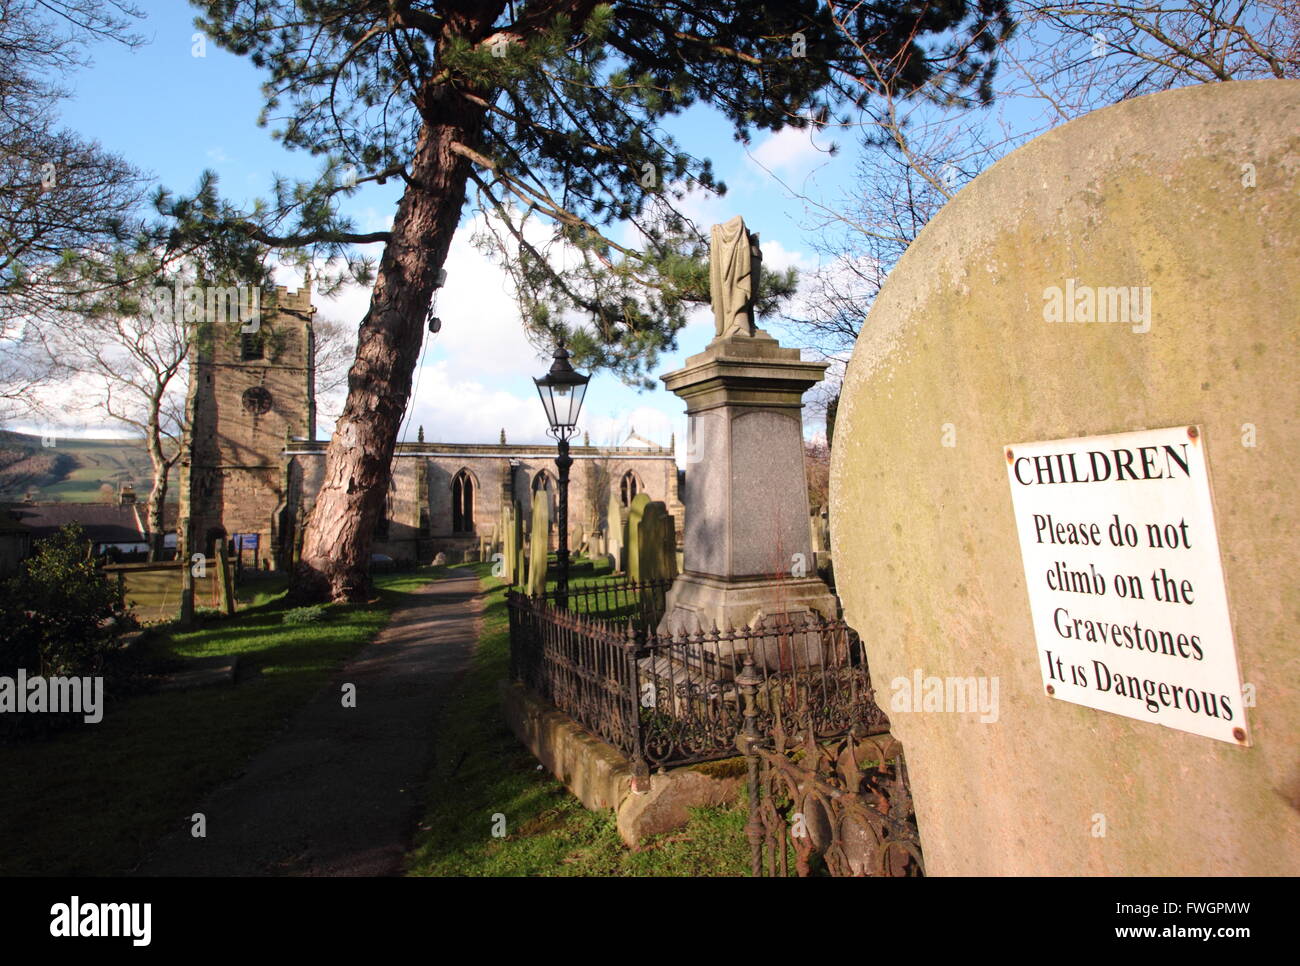 Un segno in un cimitero britannico mette in guardia i bambini che arrampicate sulle lapidi è pericoloso - Inghilterra UK, 2016 Foto Stock